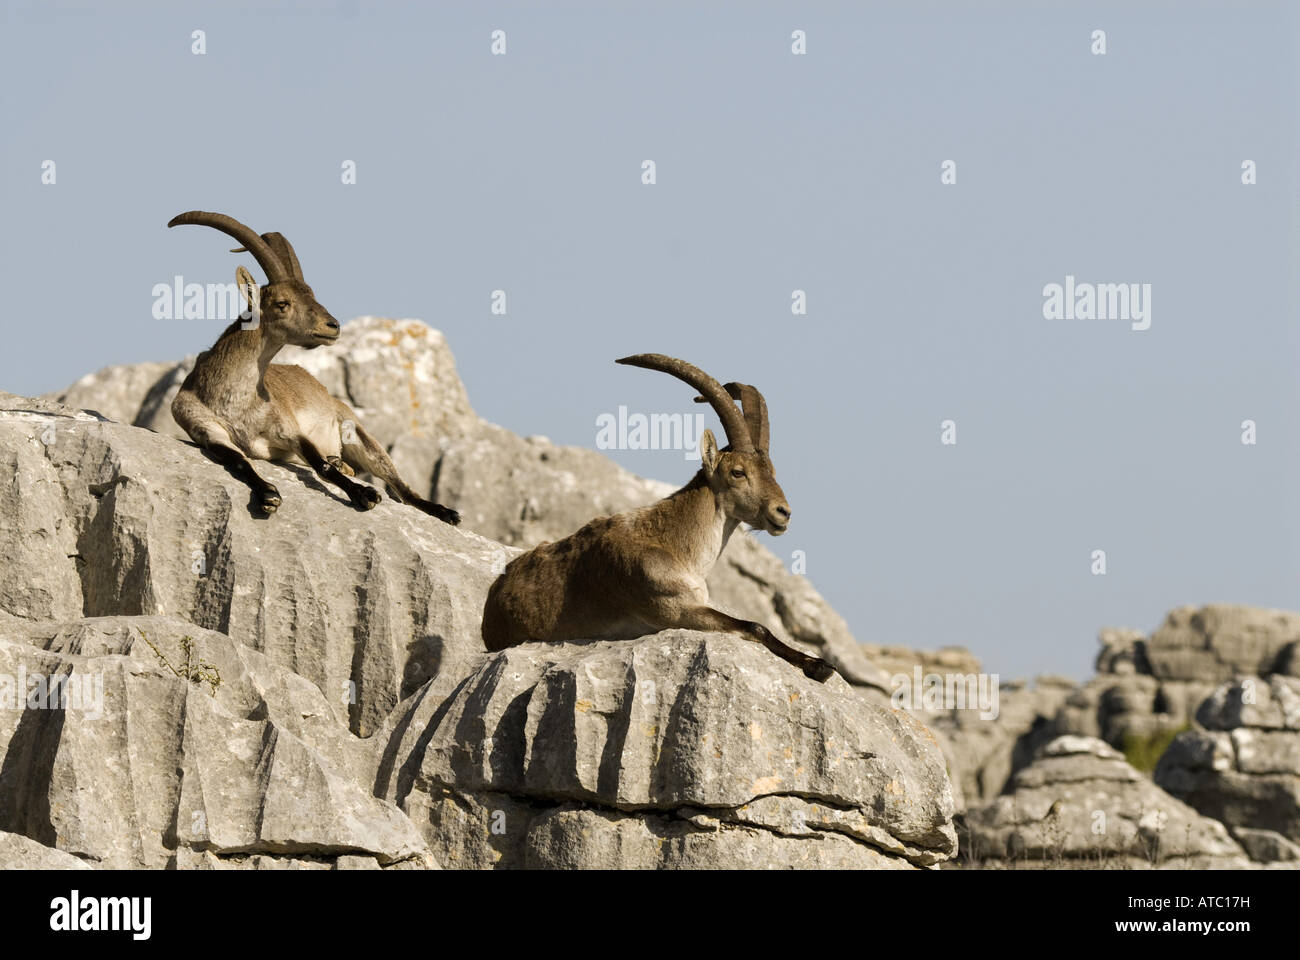 Iberian ibex, Spagnolo di stambecco (Capra pyrenaica), due individui in appoggio sulle rocce al sole, Spagna, Andalusia, Naturschutzgebiet Foto Stock